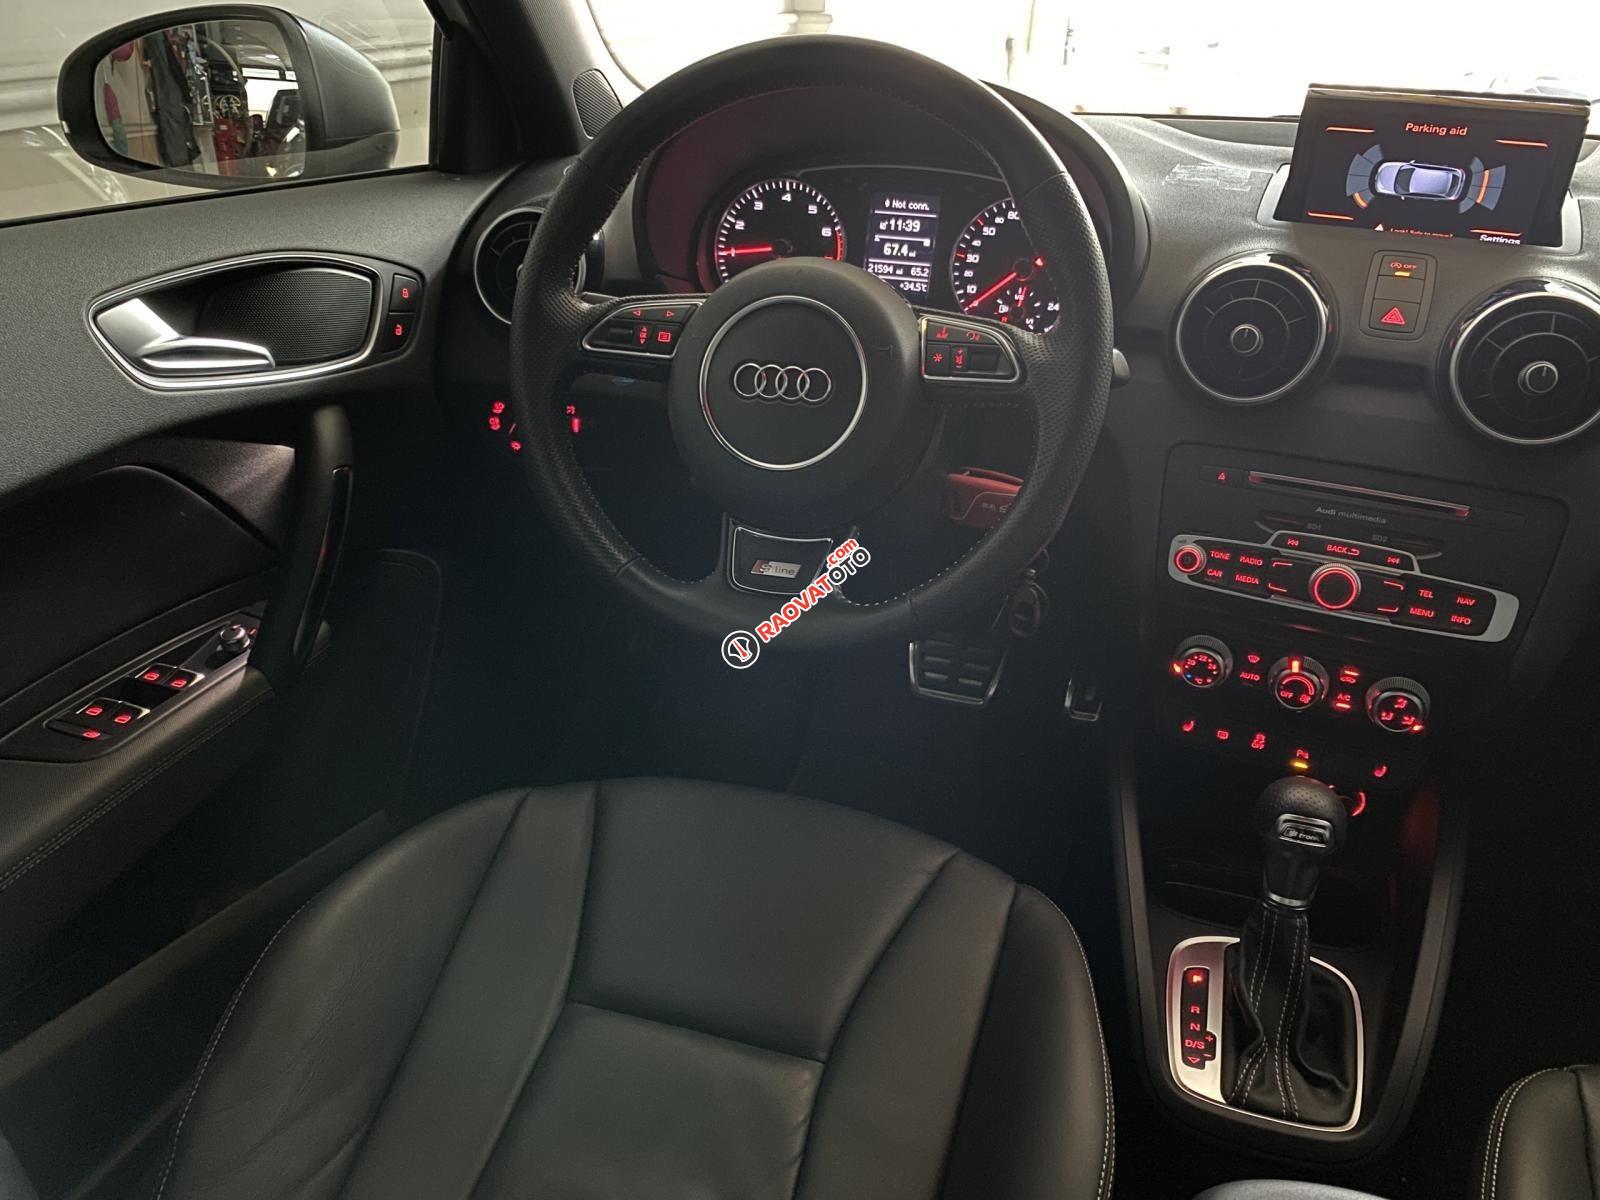 Bán xe Audi A1 bản Sline năm 2015, siêu lướt 21.000km nội thất đen zin nguyên bản, option miên man-9